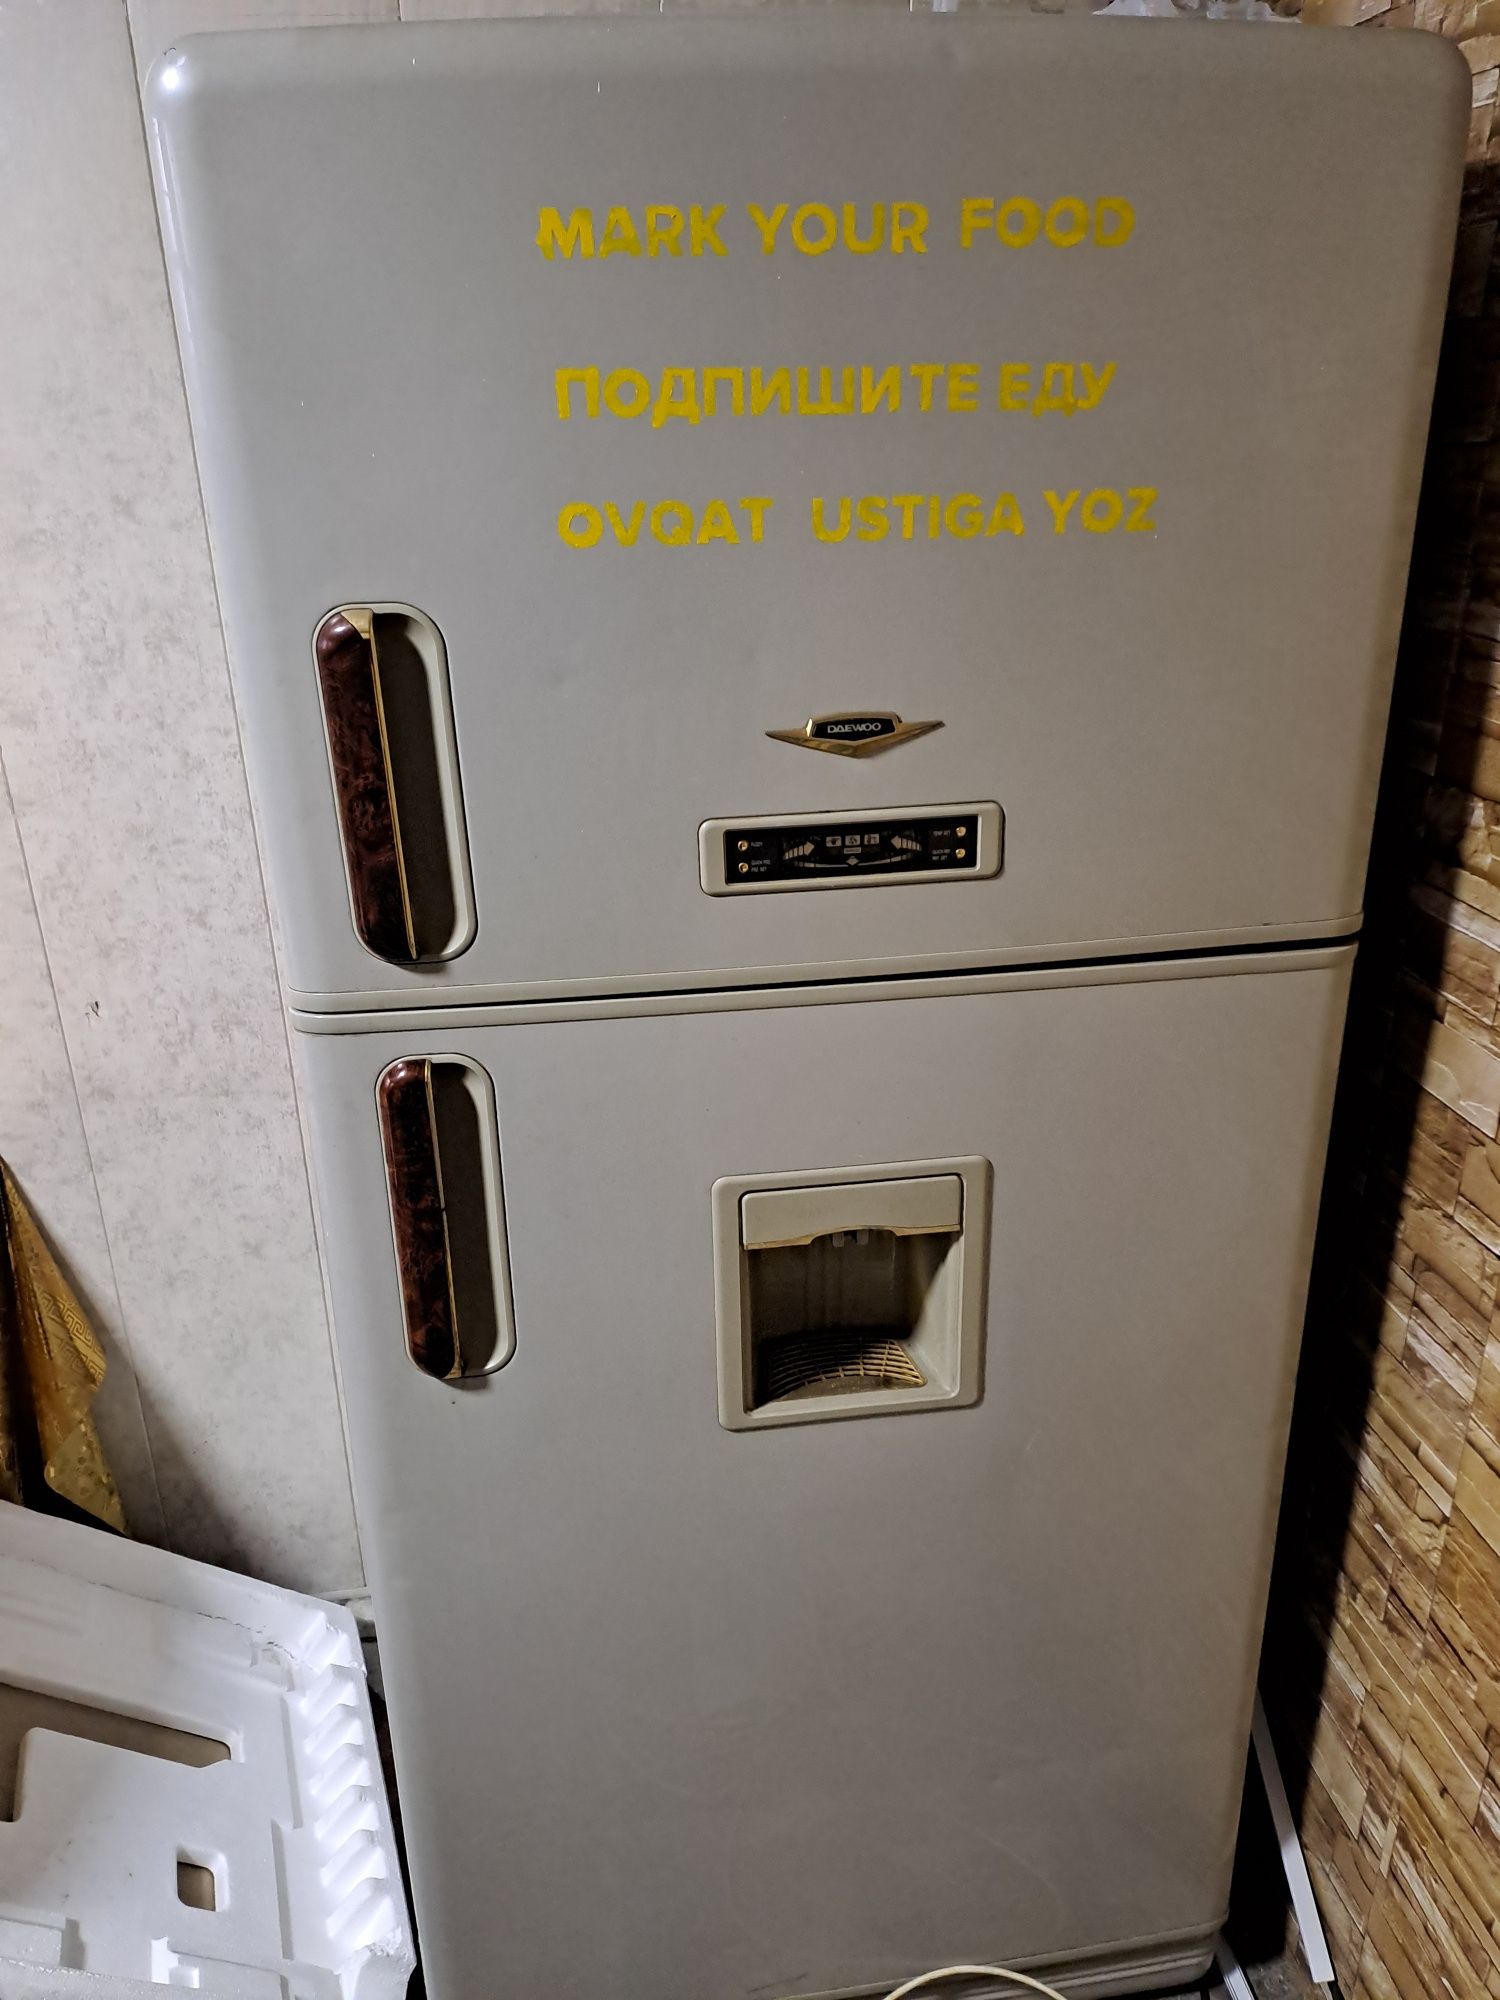 Продаётся холодильник марки ДЭУ в рабочем состоянии